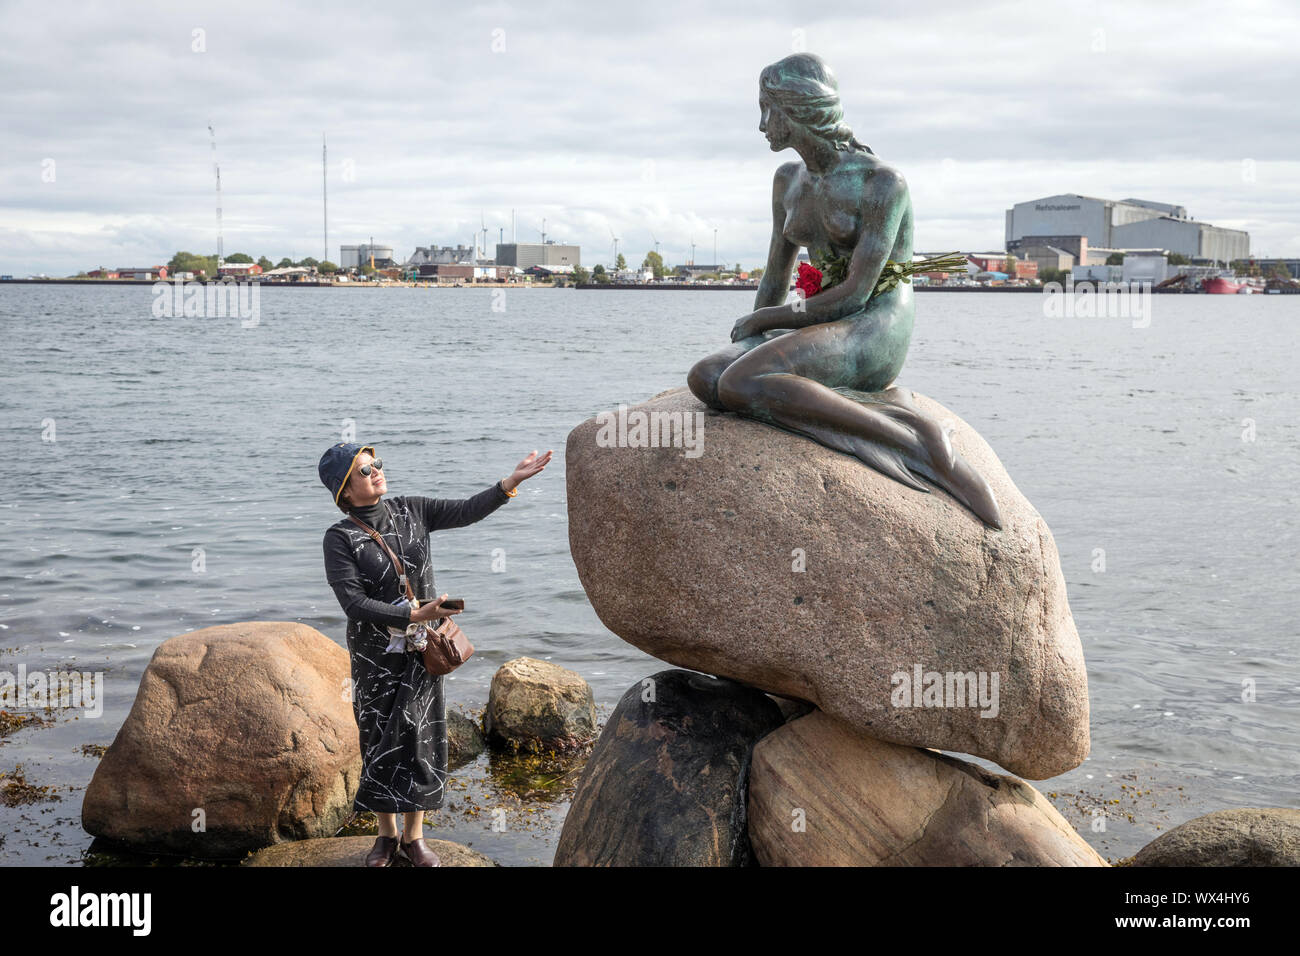 Un visiteur avec Edvard Eriksen's statue de la Petite Sirène à Langelinie, Copenhague, Danemark Banque D'Images